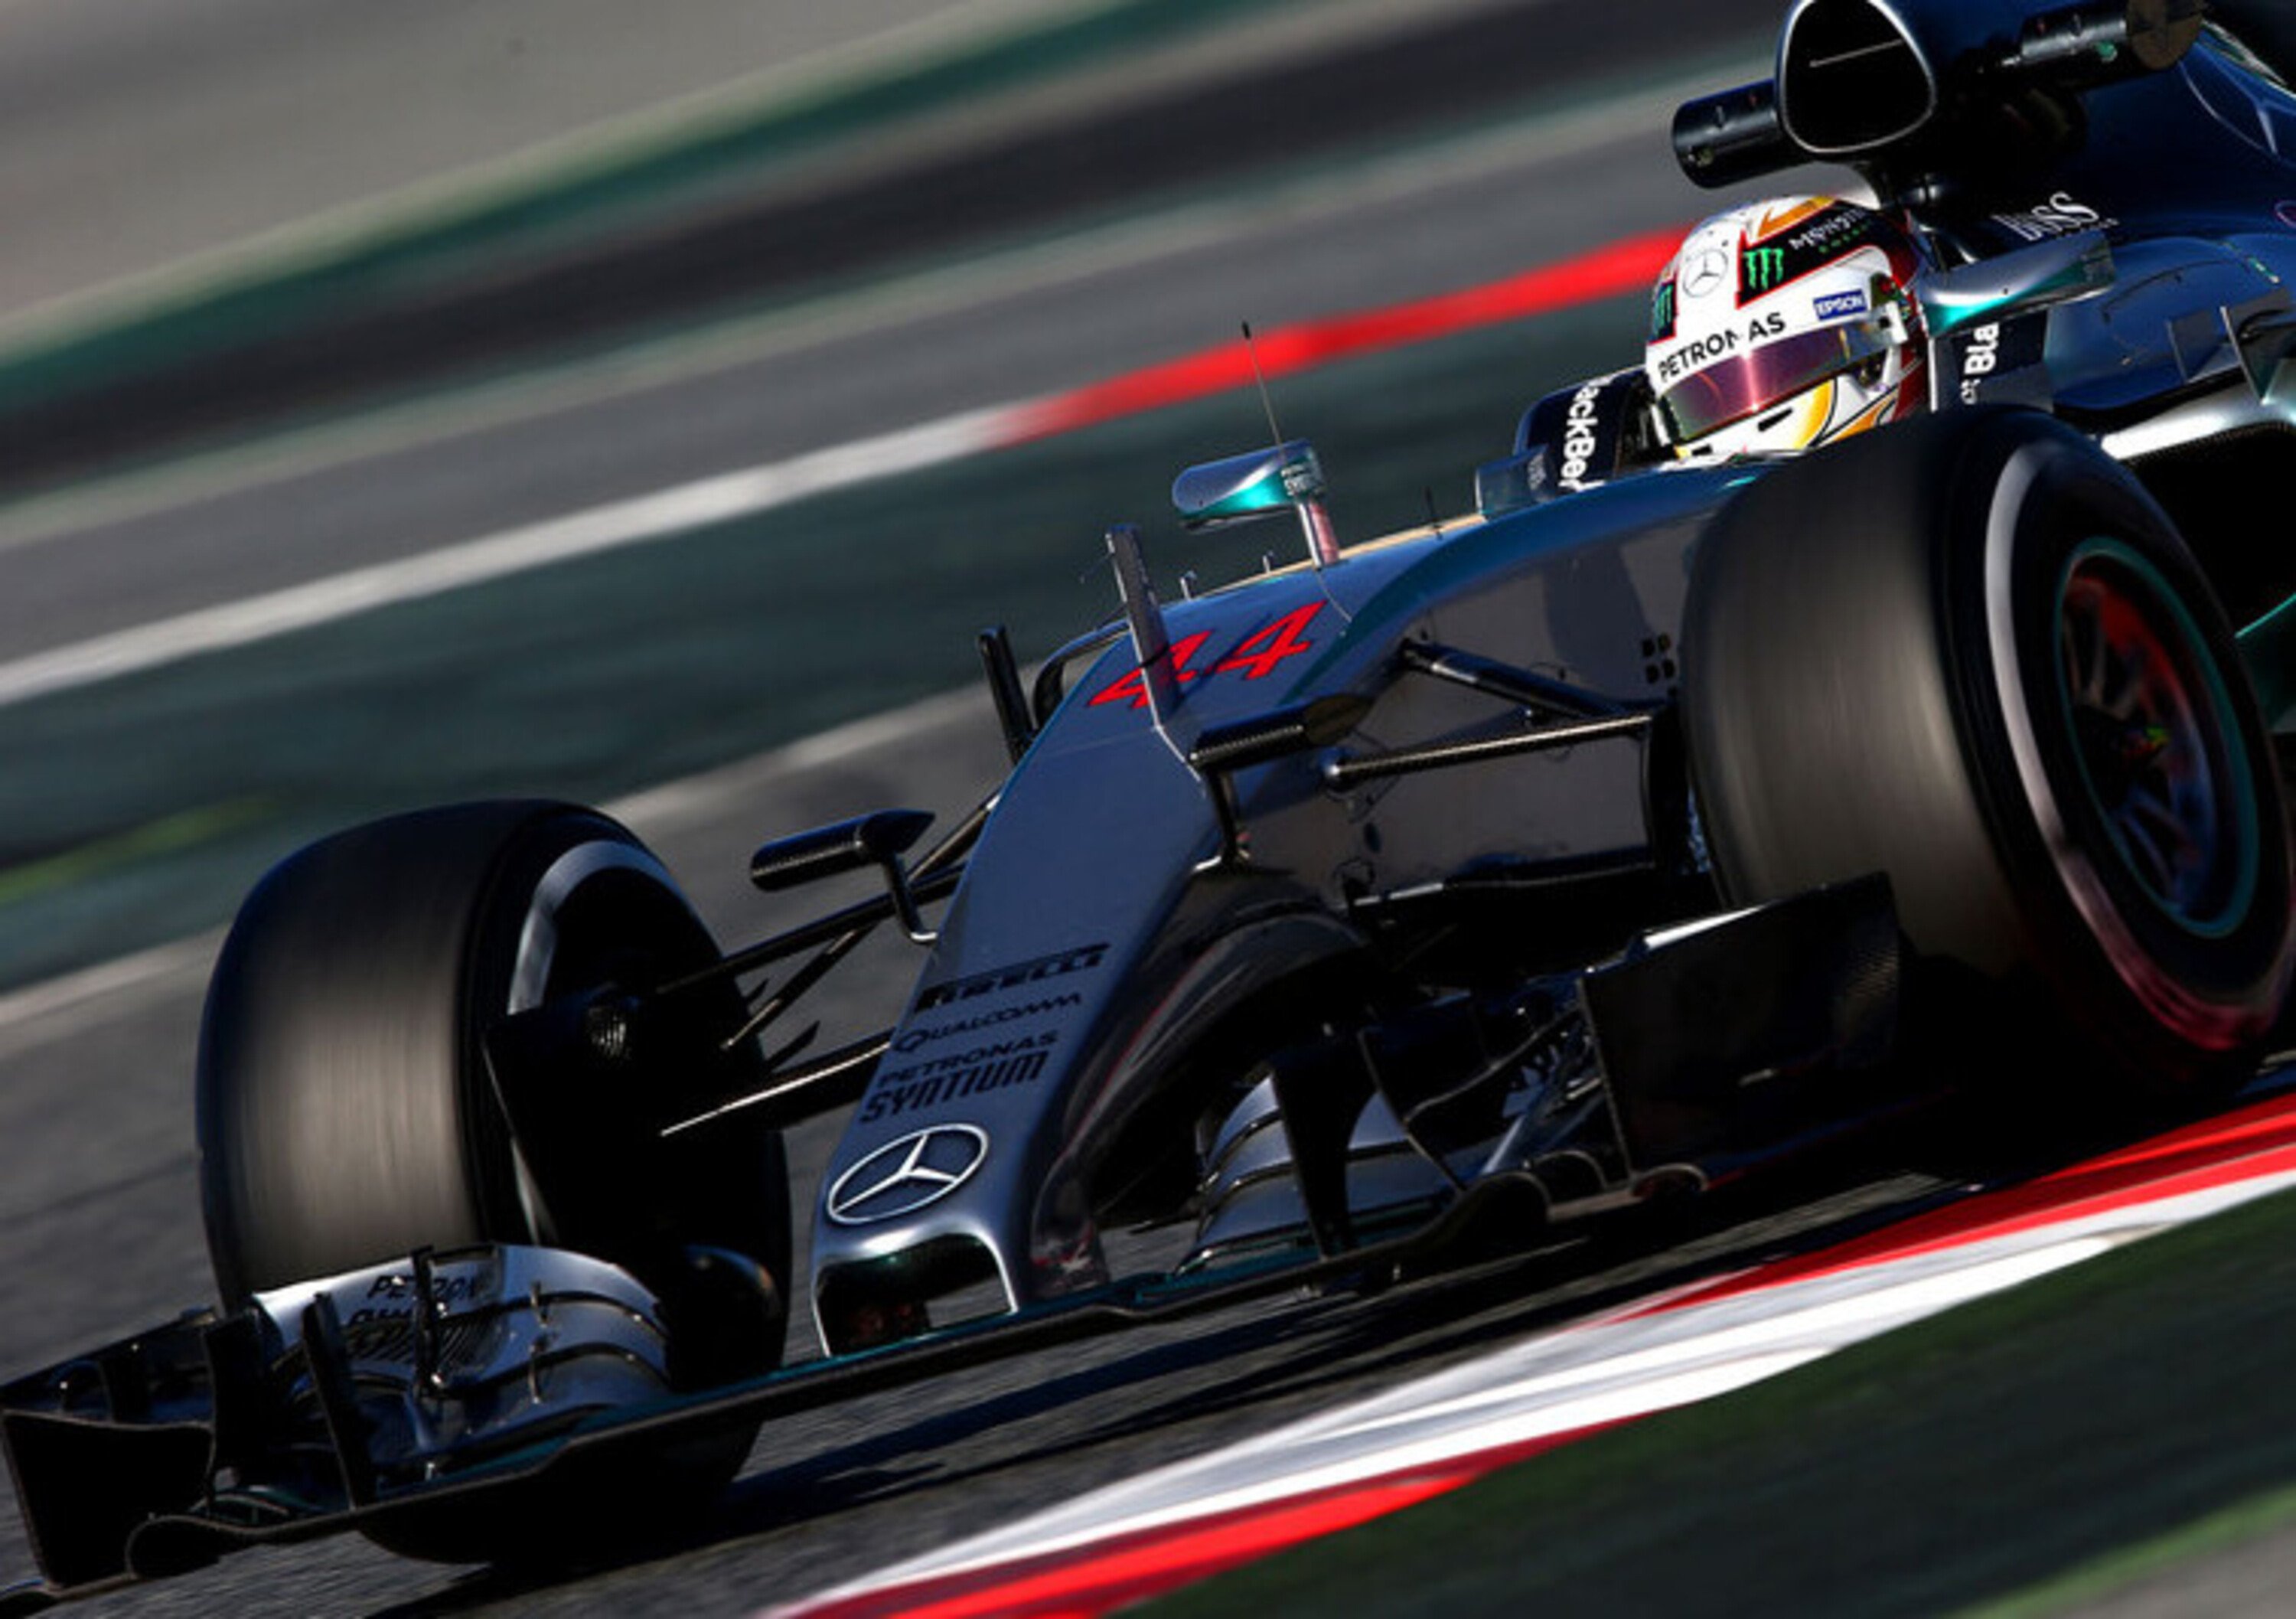 Barcellona, F1 test day/3: ancora Mercedes davanti con Hamilton